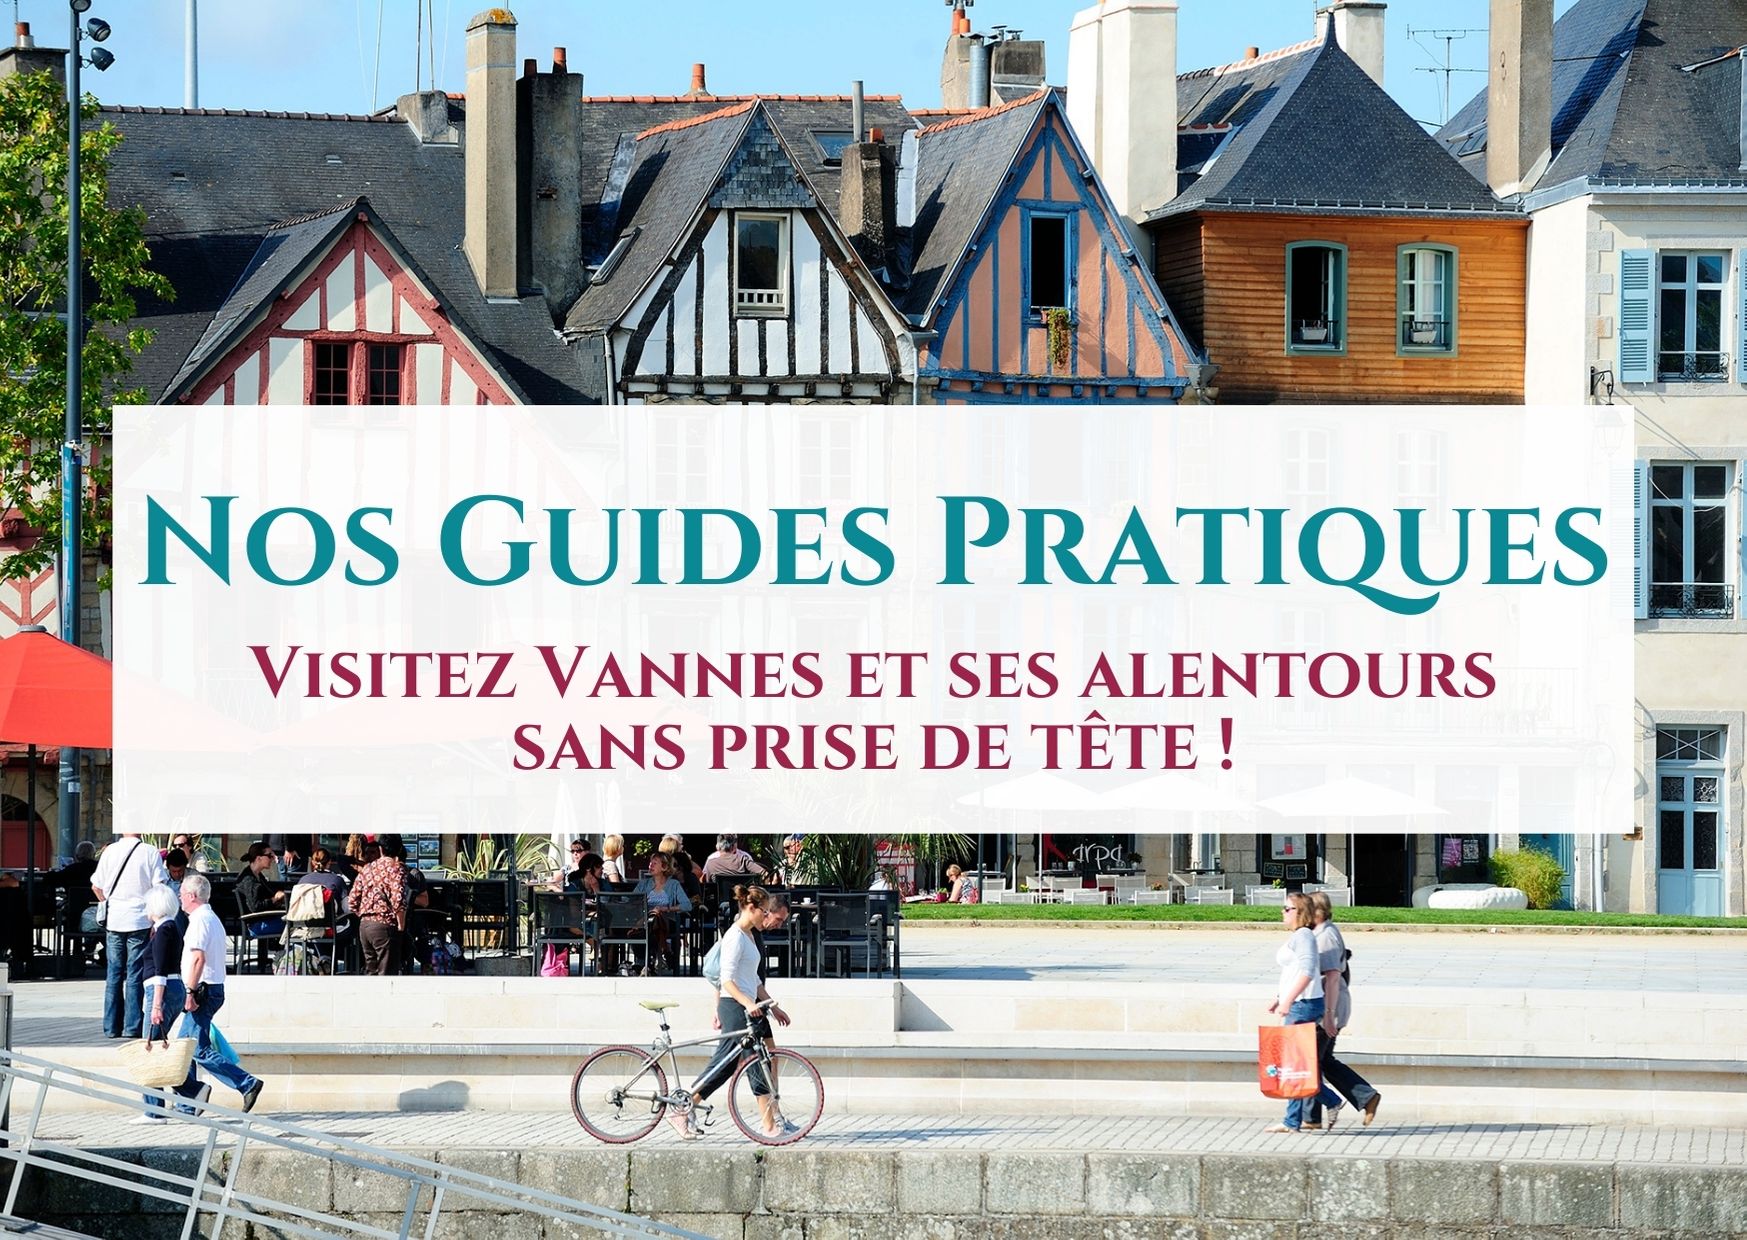 24h ou 48h à Vannes : les guides pratiques pour s'évader le temps d'un week-end